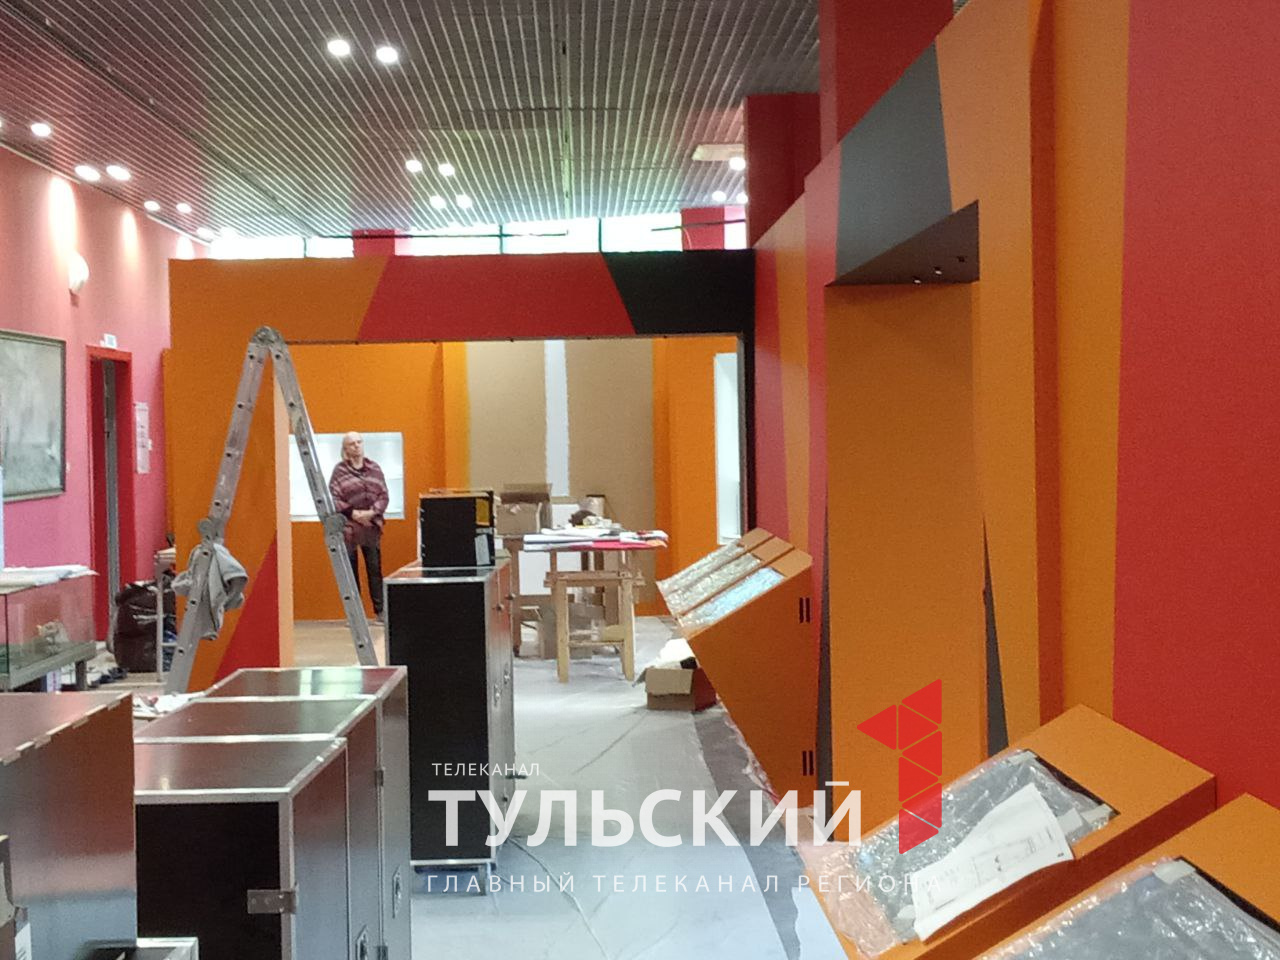 Шедевры из 12 федеральных музеев России представят на новой выставке в Туле